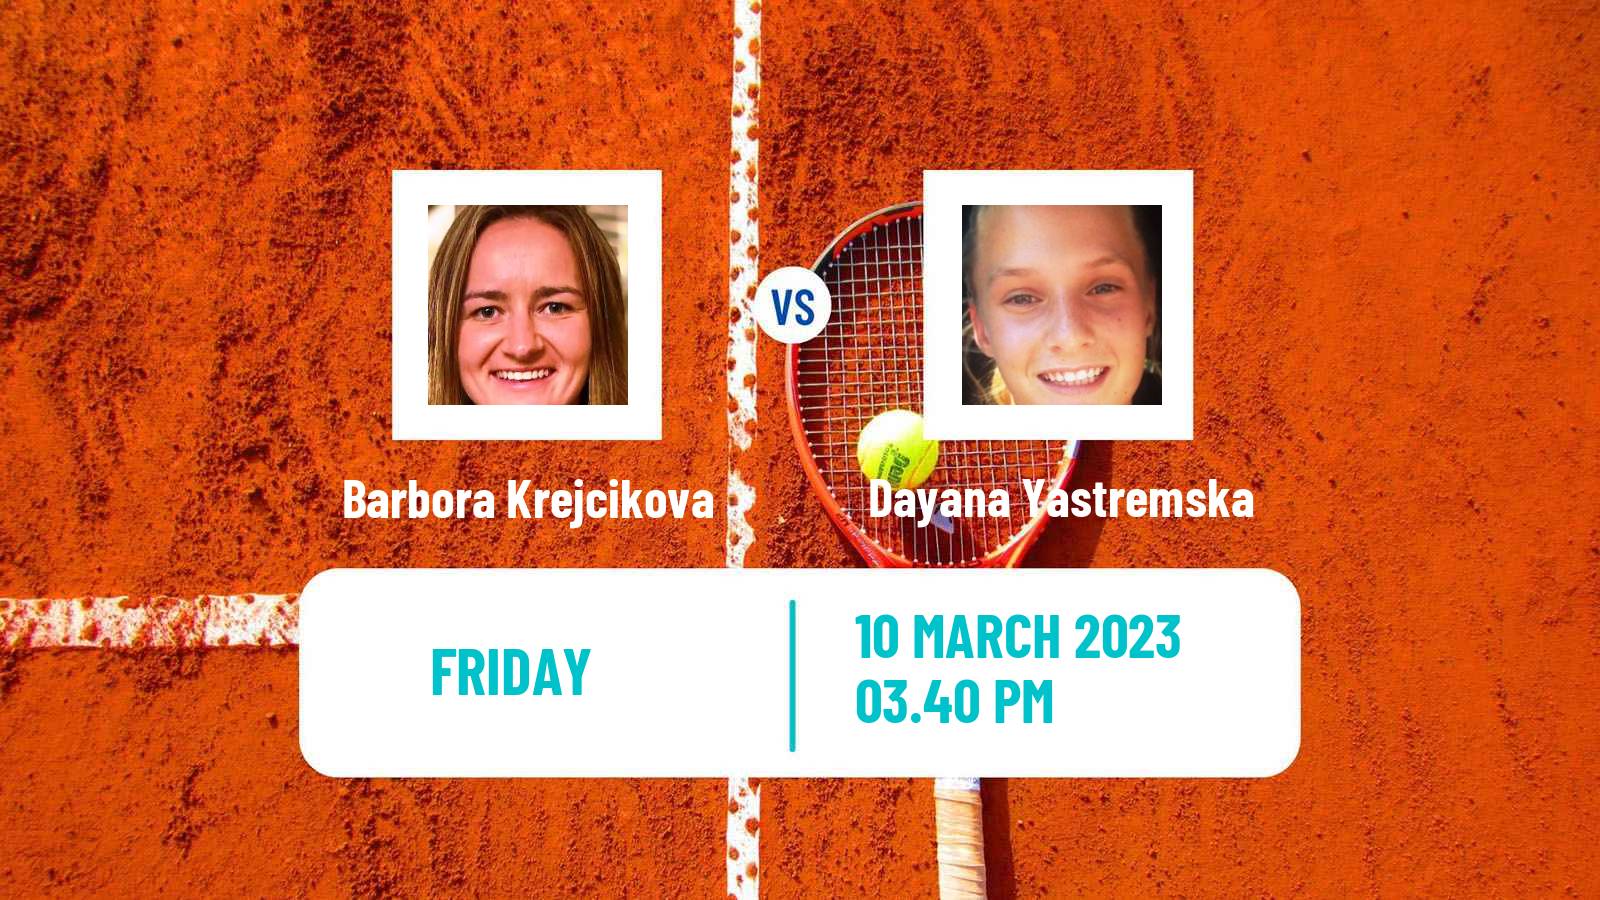 Tennis WTA Indian Wells Barbora Krejcikova - Dayana Yastremska